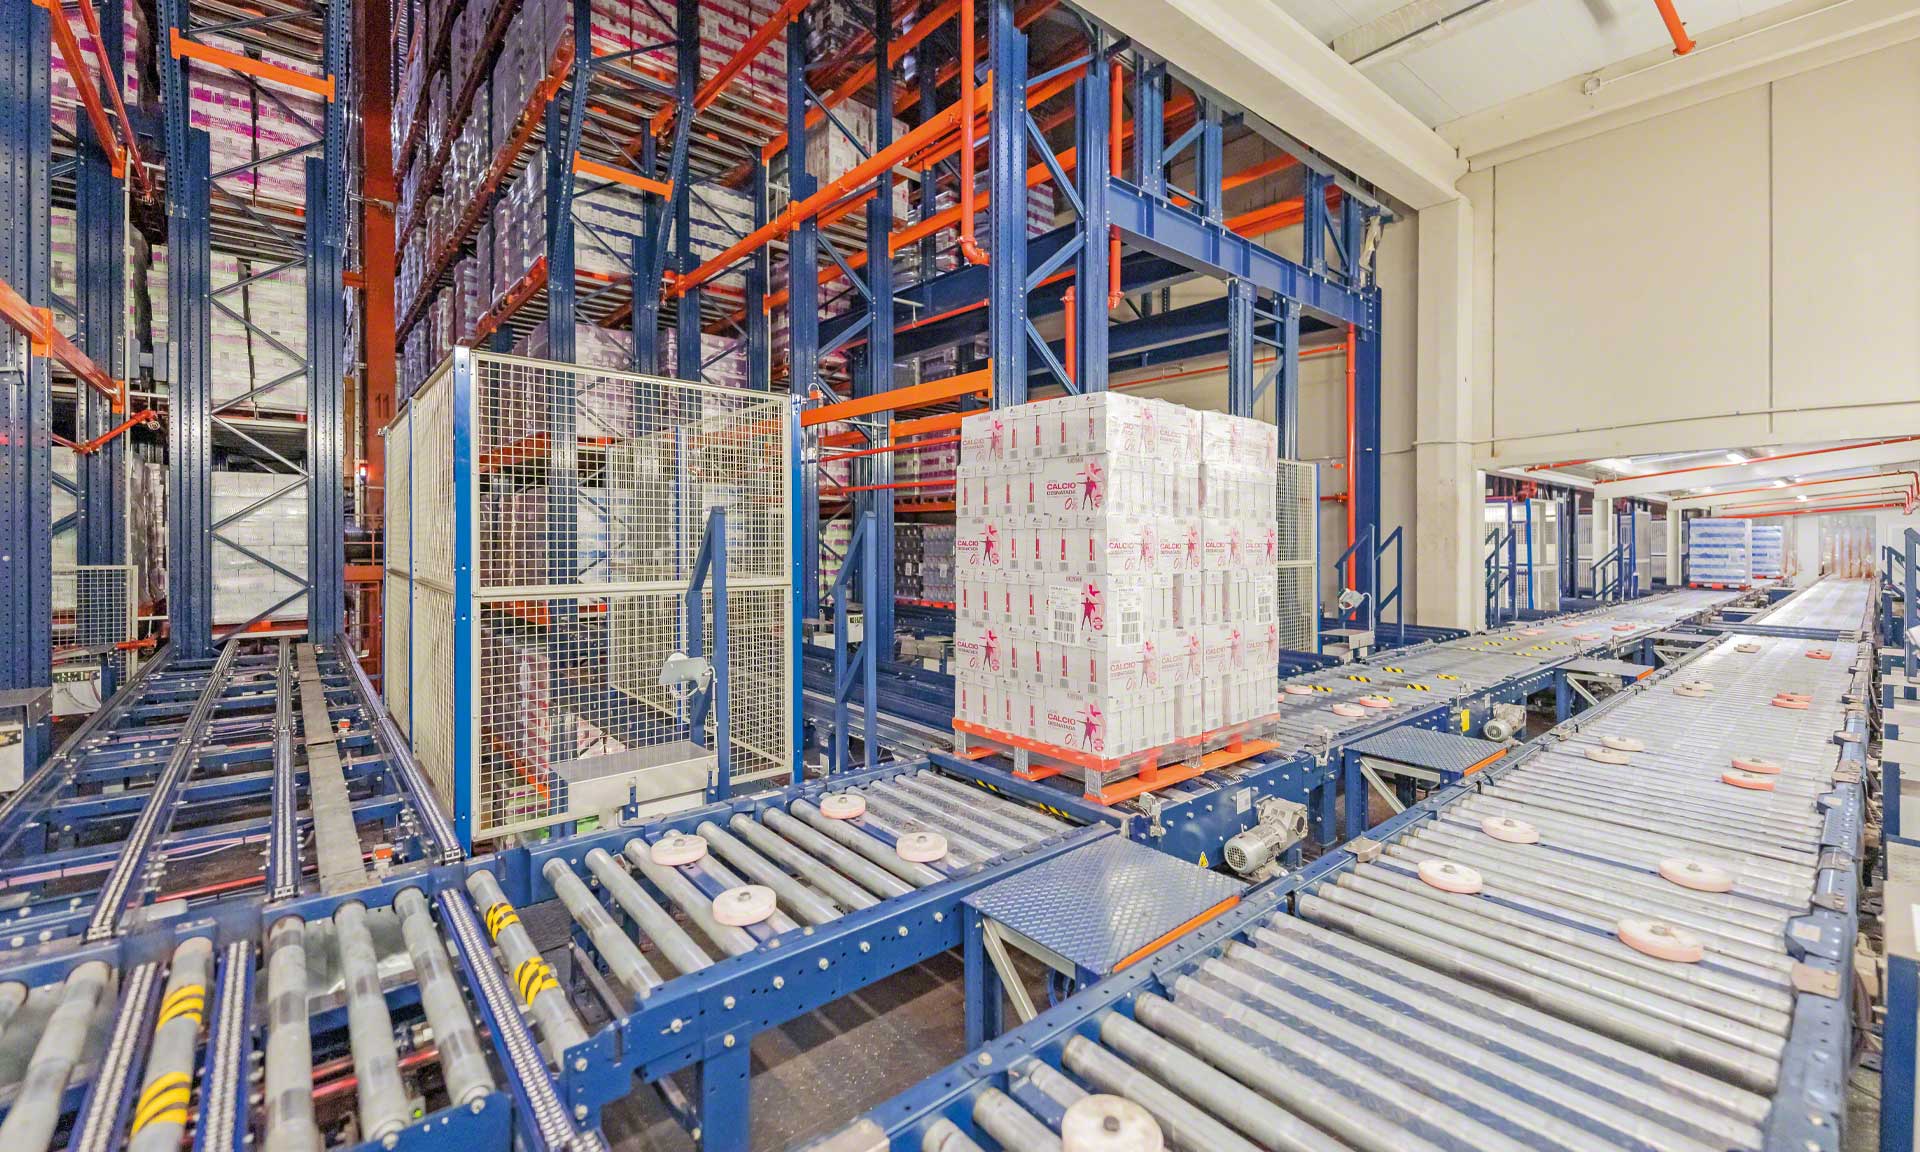 Esnelat automatiza sua logística com dois armazéns automáticos para produtos lácteos